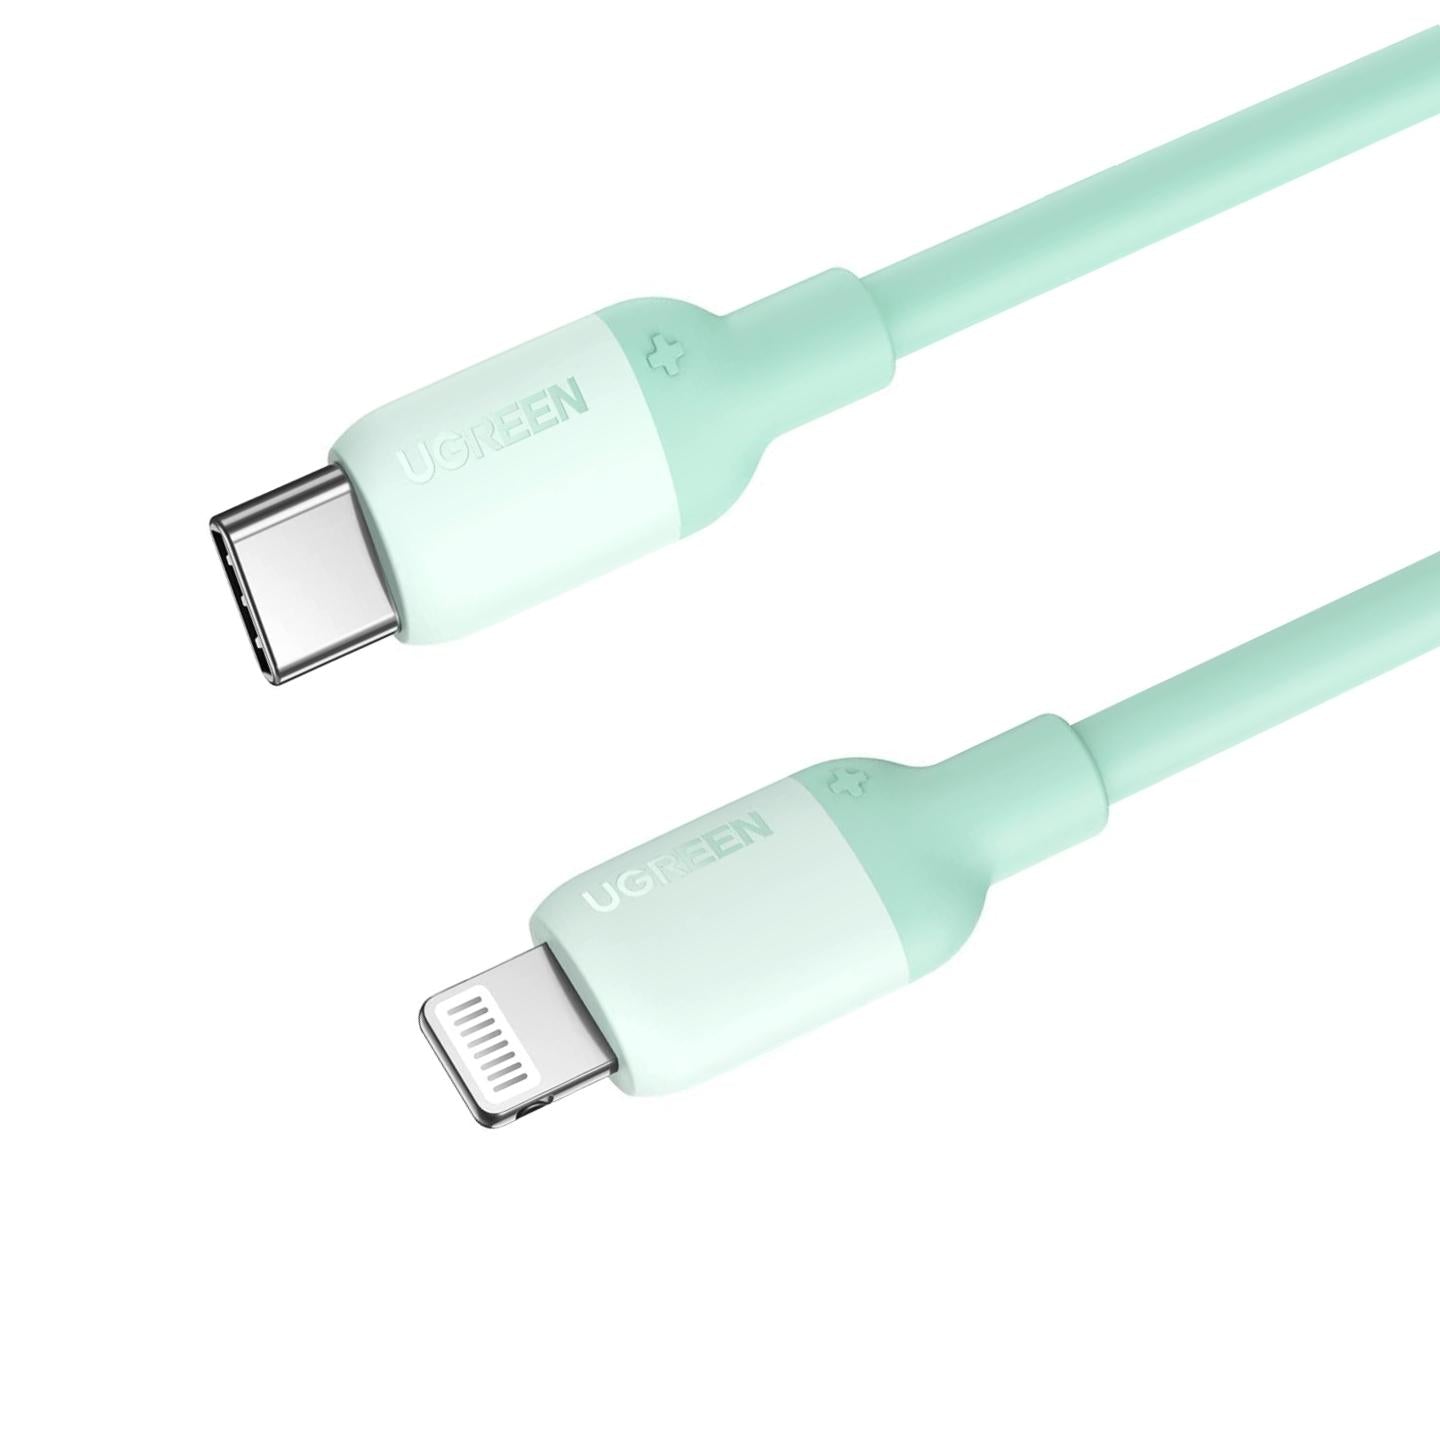 Compre Essager 3m Super Long Carging Cable USB Sin Enredo a Tipo C 6A Cable  de Datos de Transmisión de 480 Mbps de Carga de 480 Mbps en China